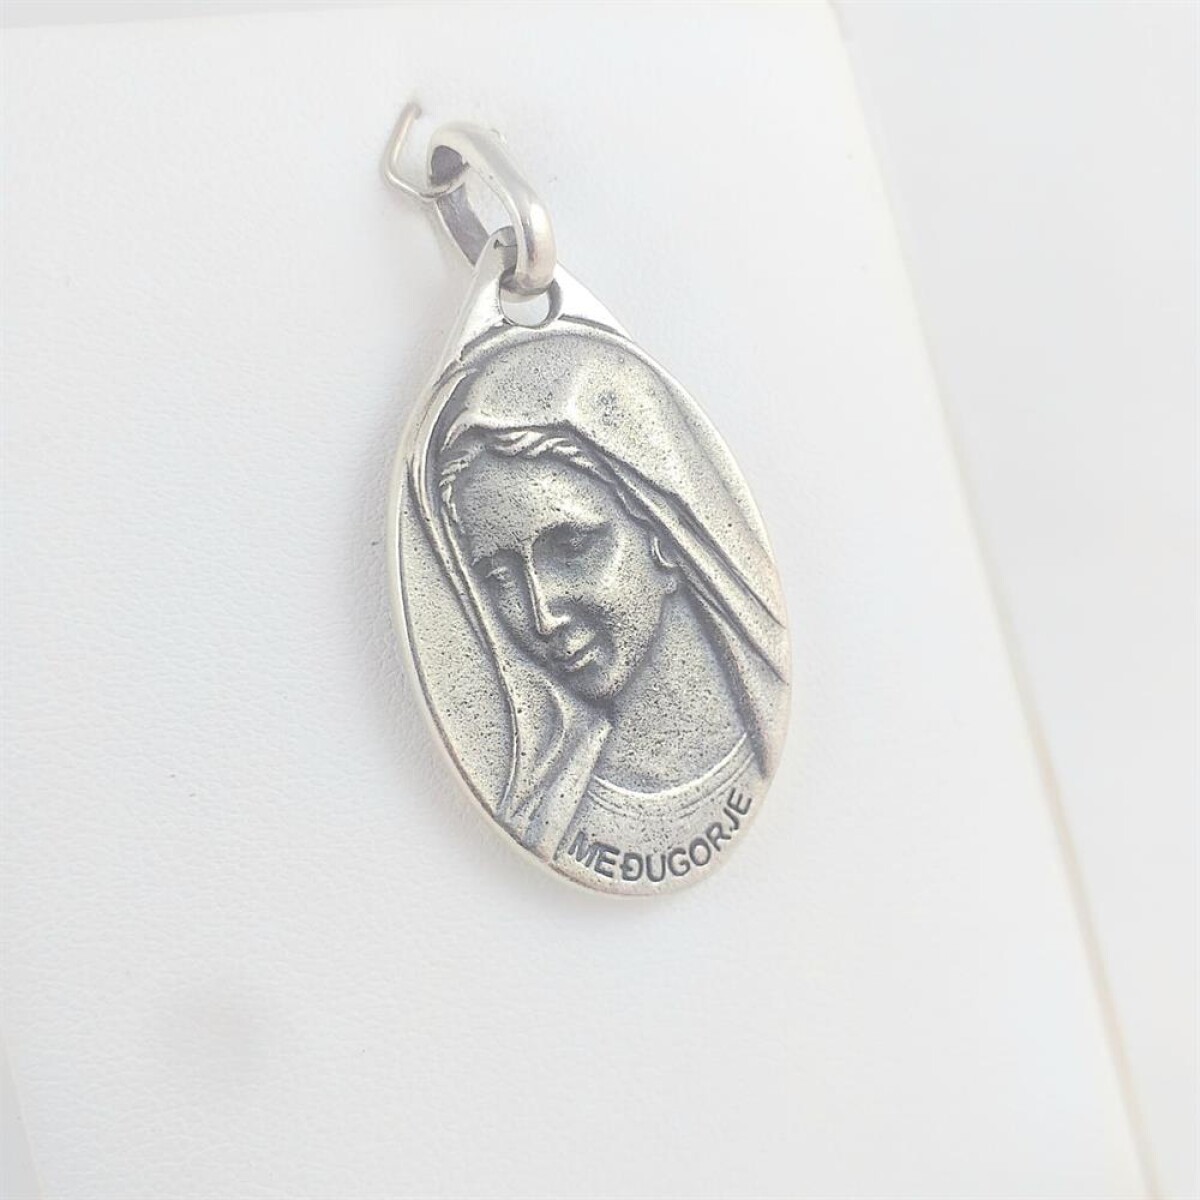 Medalla religiosa de plata 925, Virgen de Medjugore y cristo. 